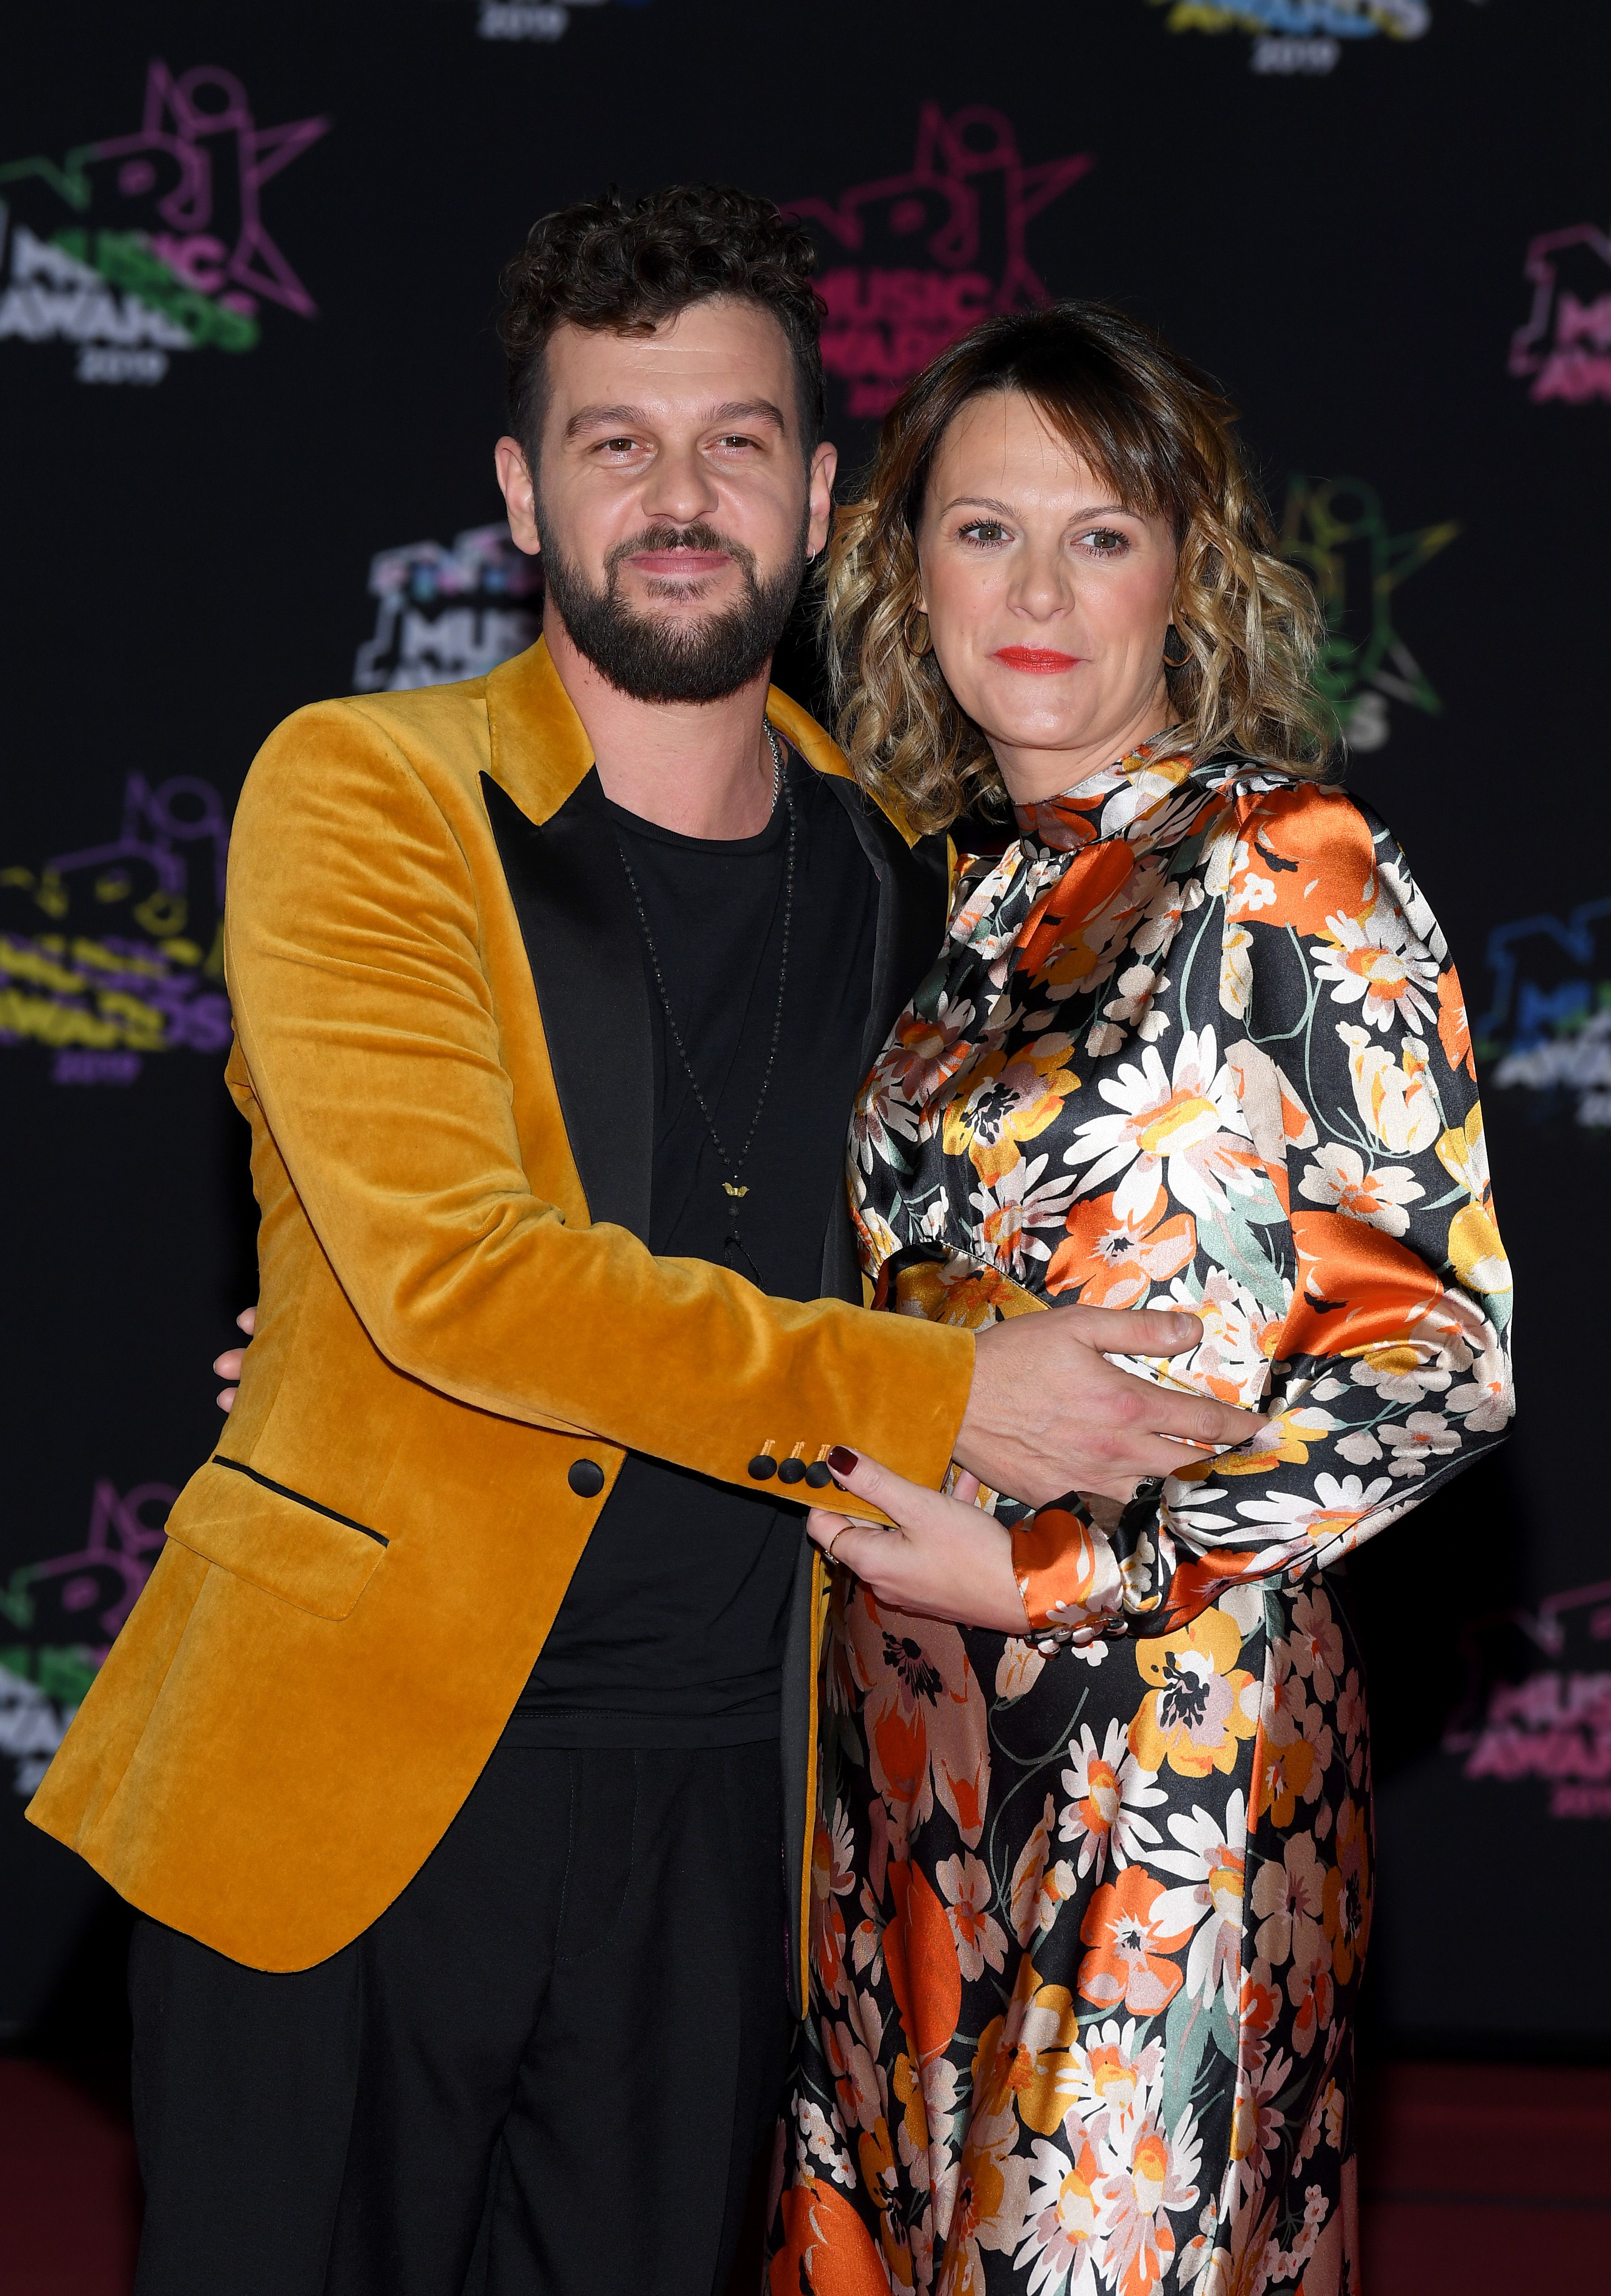 Claudio Capeo et son épouse Aurelie Willgallis, au Palais des Festivals le 09 novembre 2019 à Cannes, France. | Photo : Getty Images